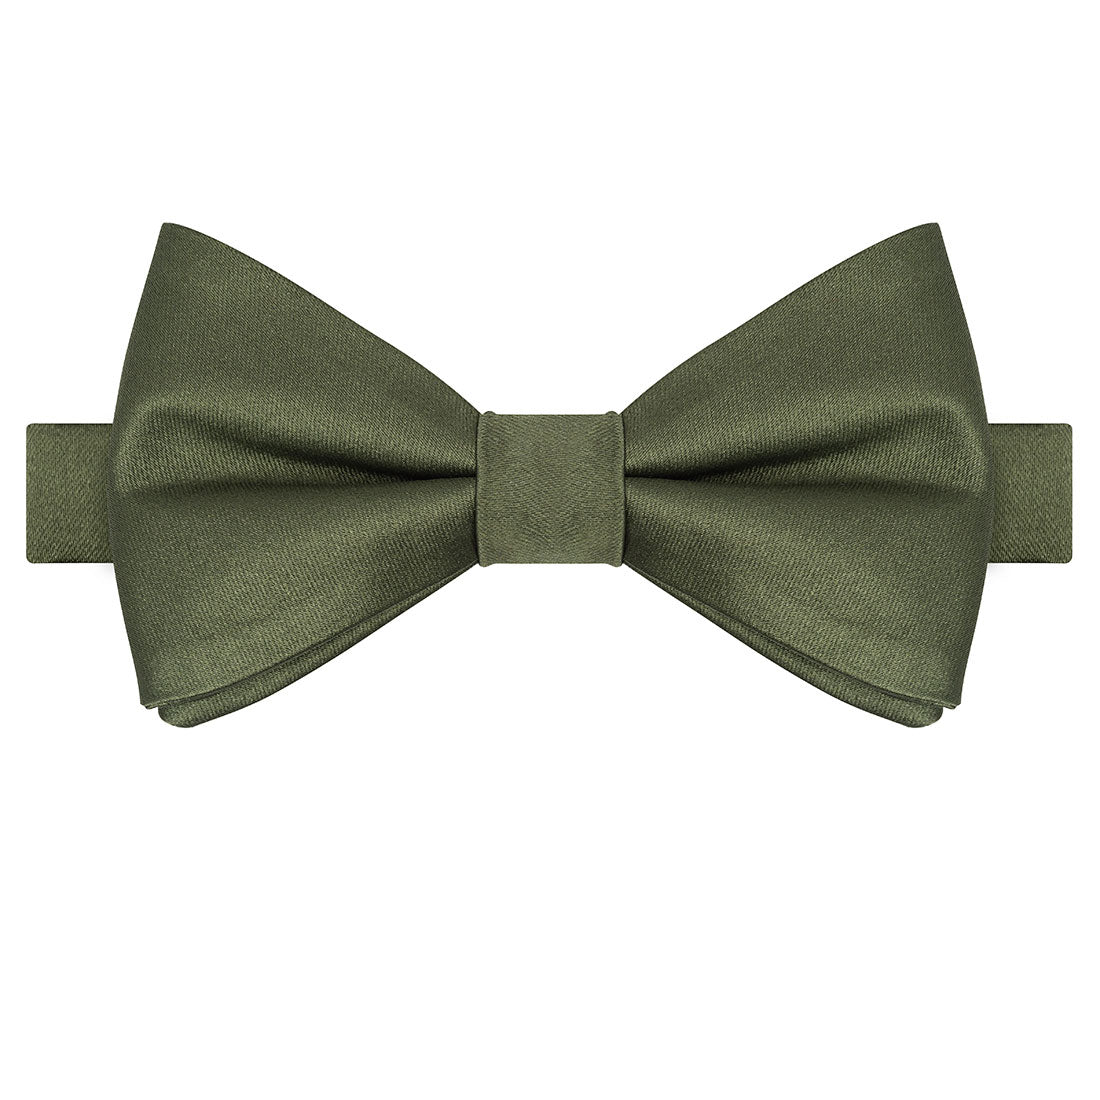 Olive Satin Bowtie - Tie, bowtie, pocket square  | Kissties